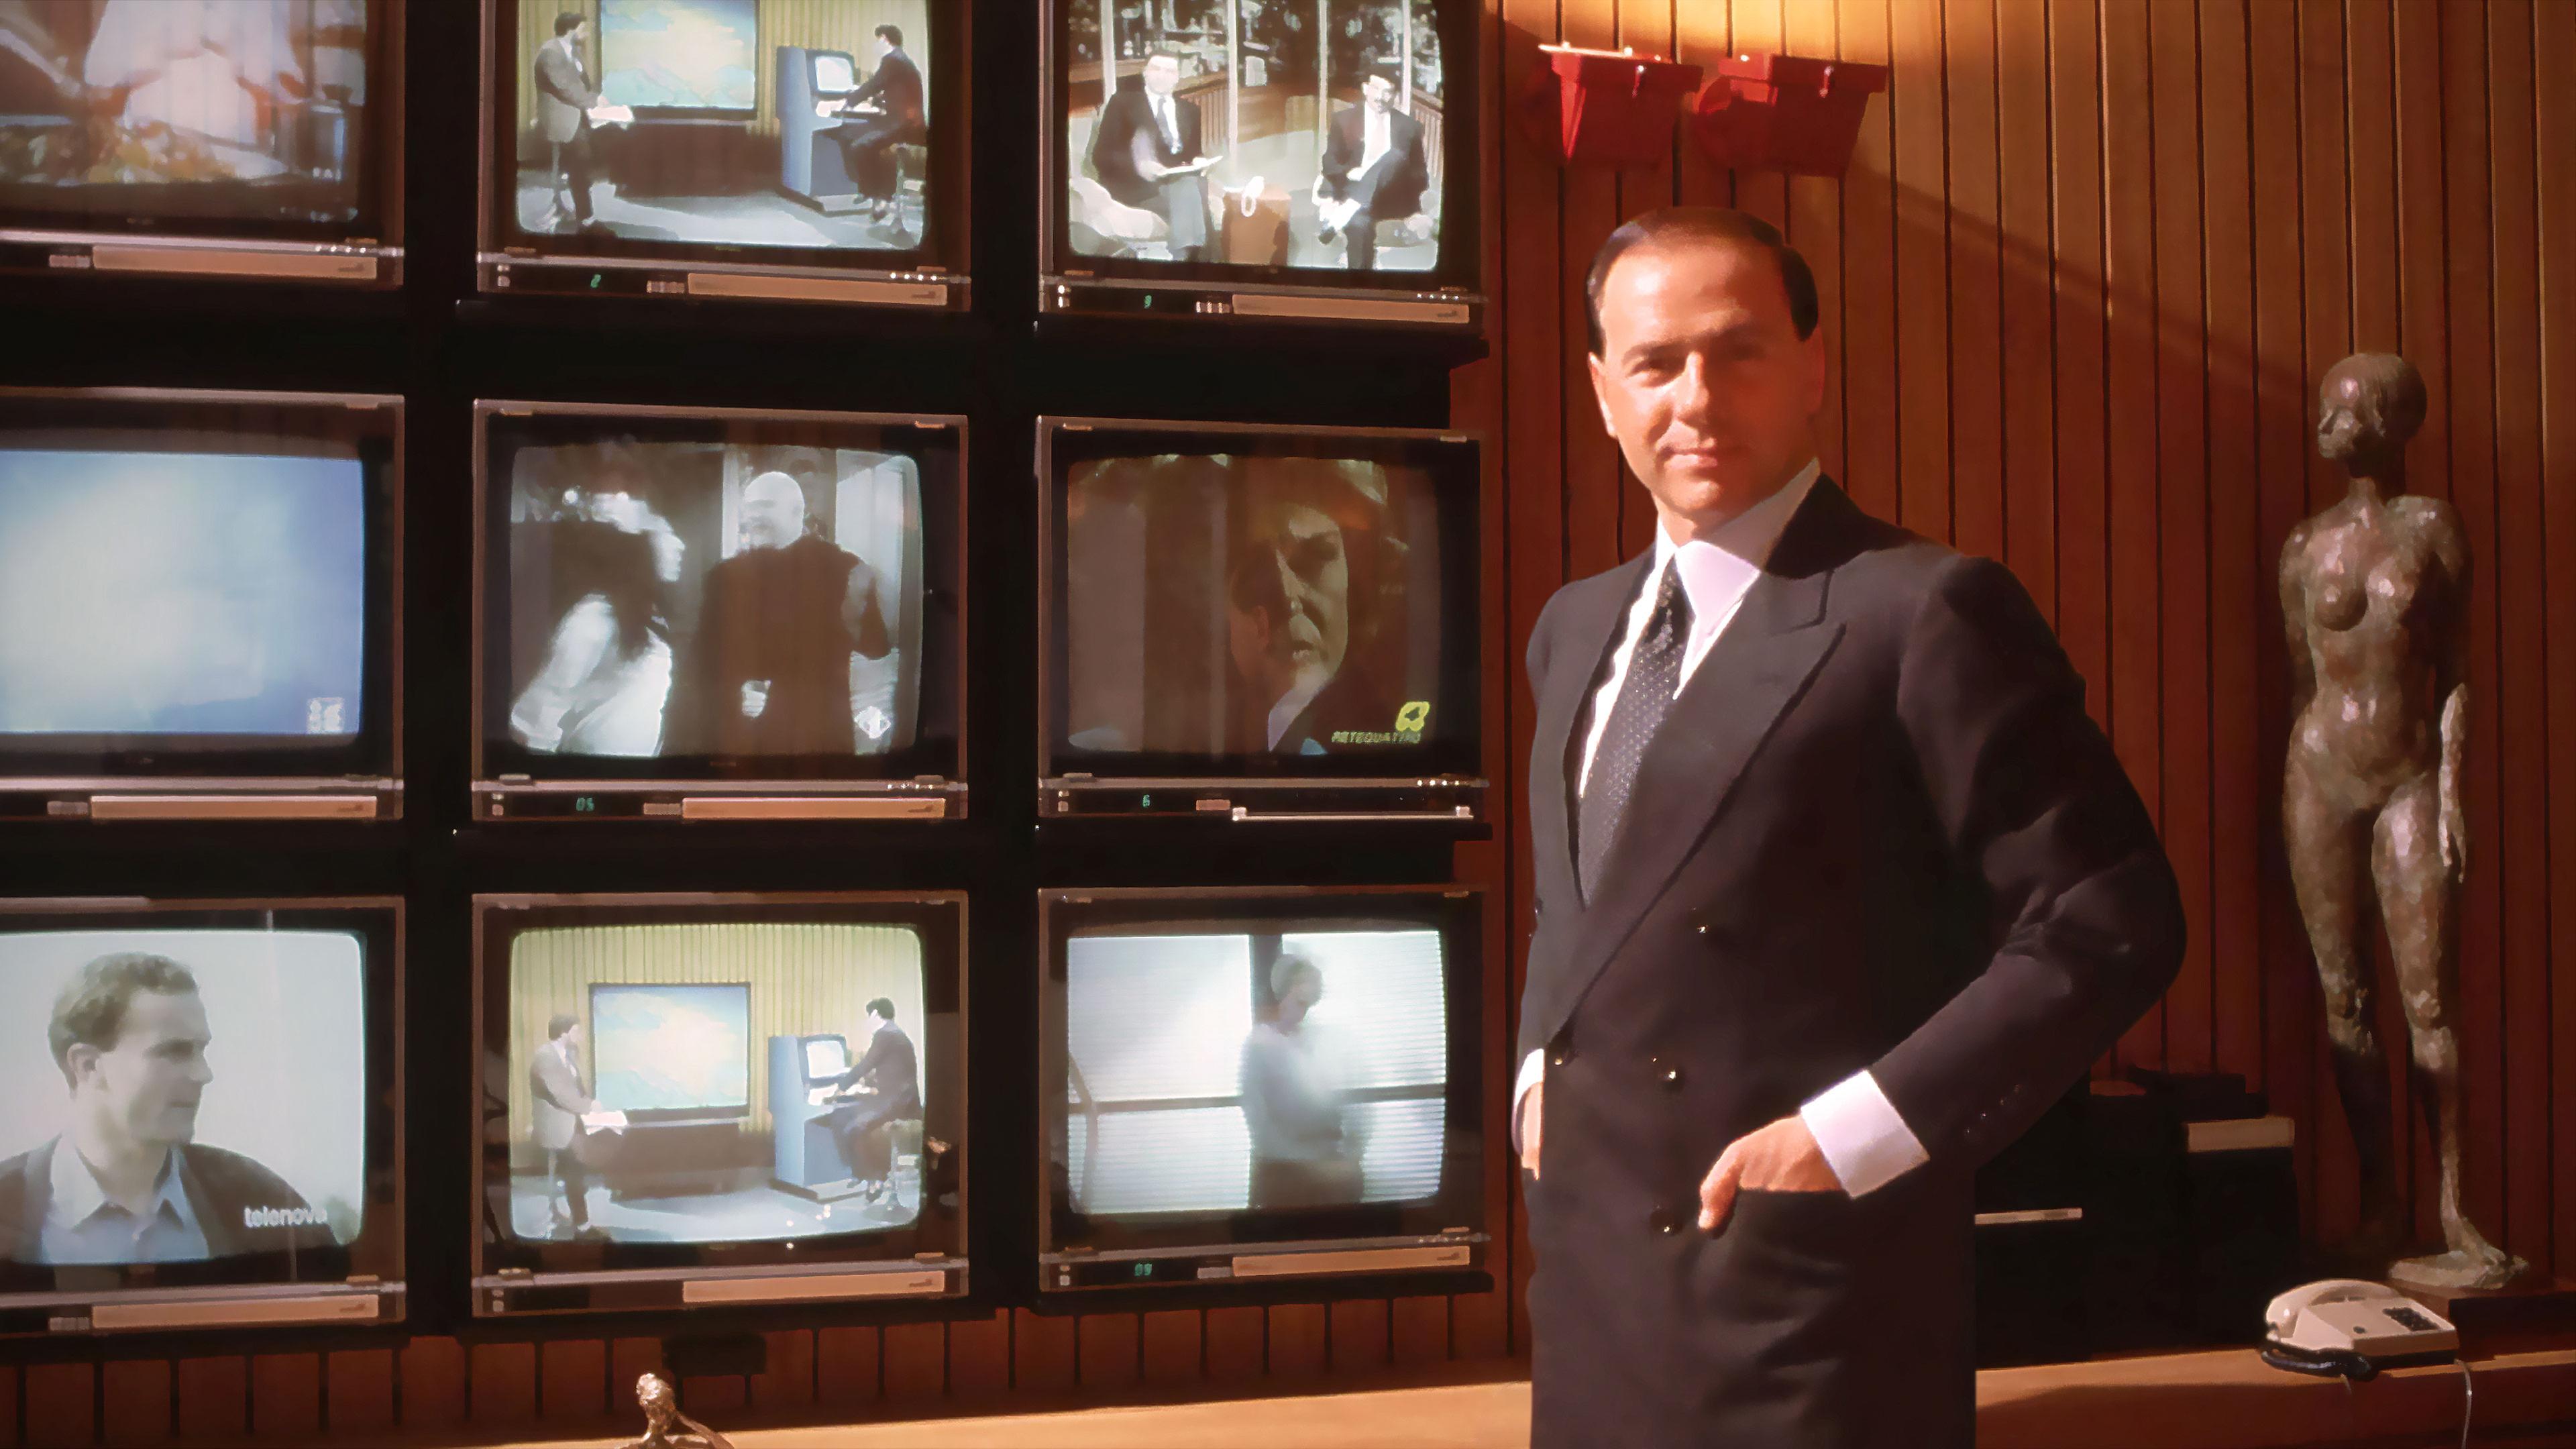 Silvio Berlusconi steht vor einer Wand mit mehreren Fernsehern.